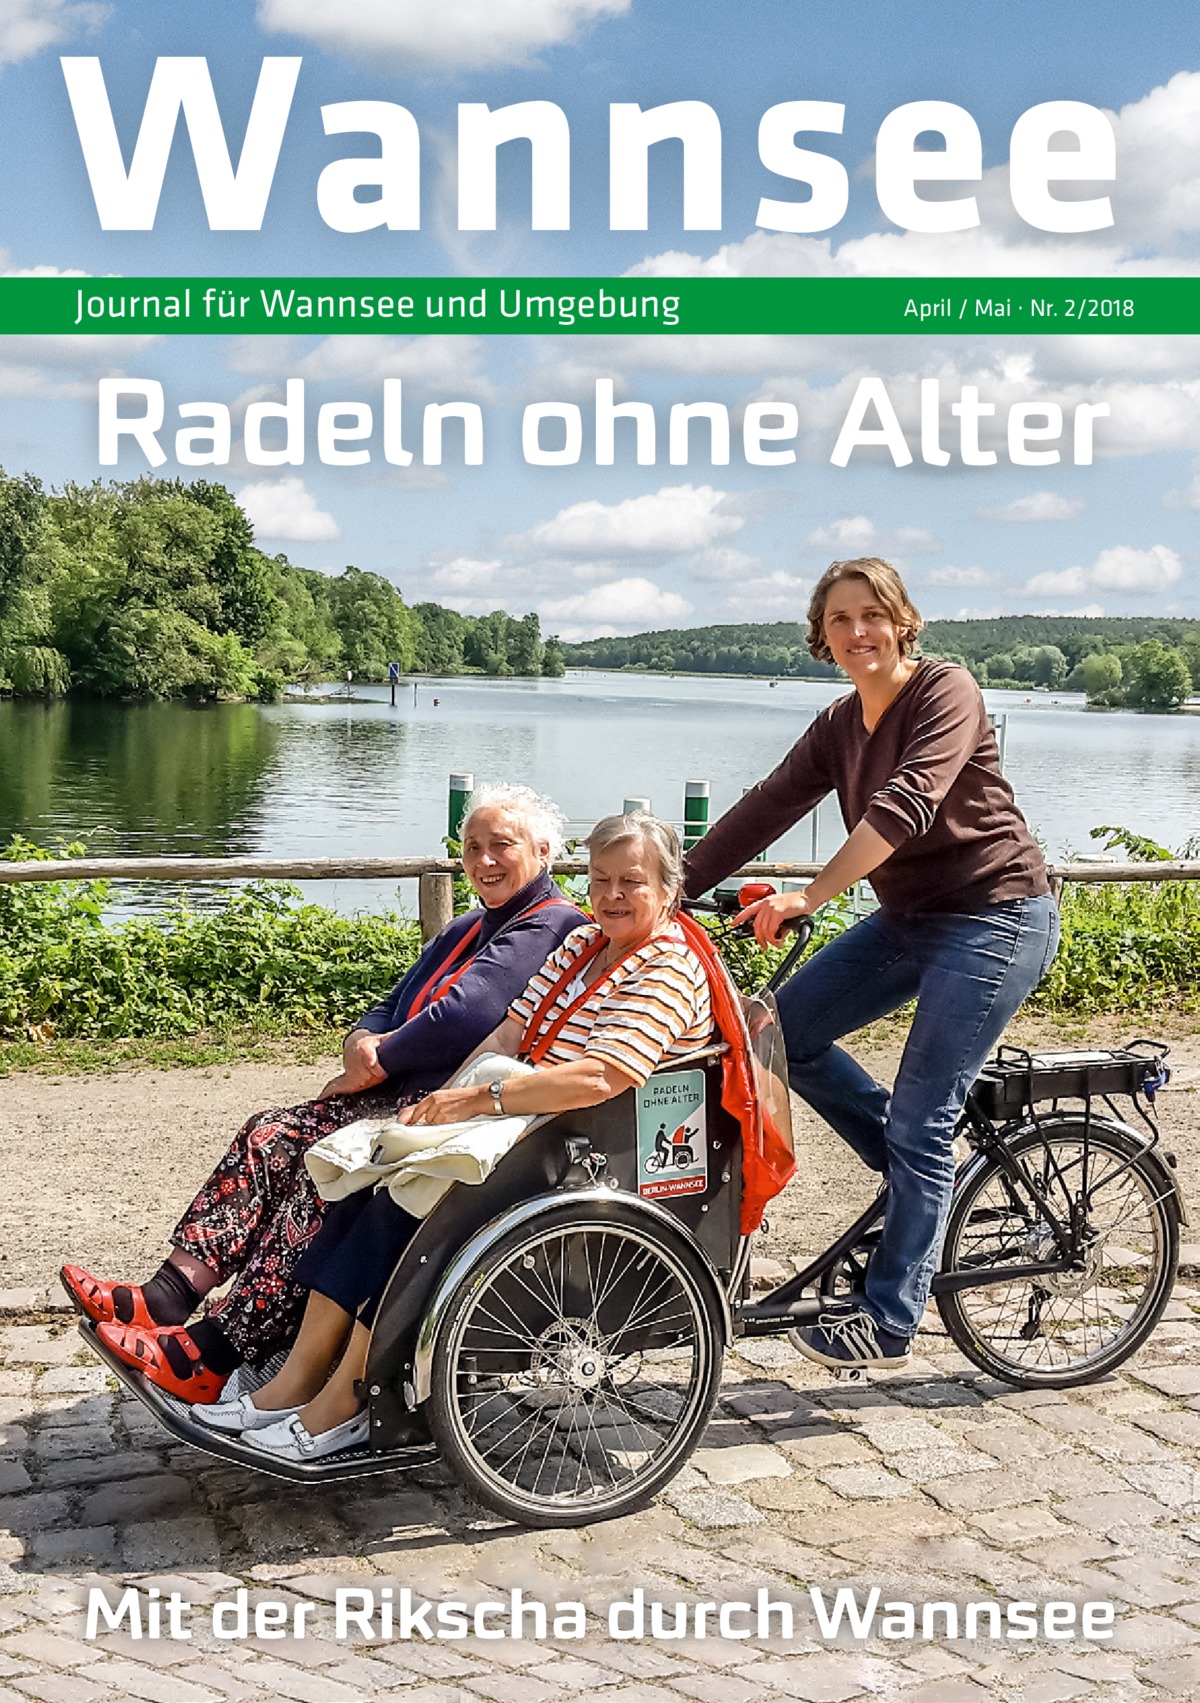 Wannsee Journal für Wannsee und Umgebung  April / Mai · Nr. 2/2018  Radeln ohne Alter  Mit der Rikscha durch Wannsee